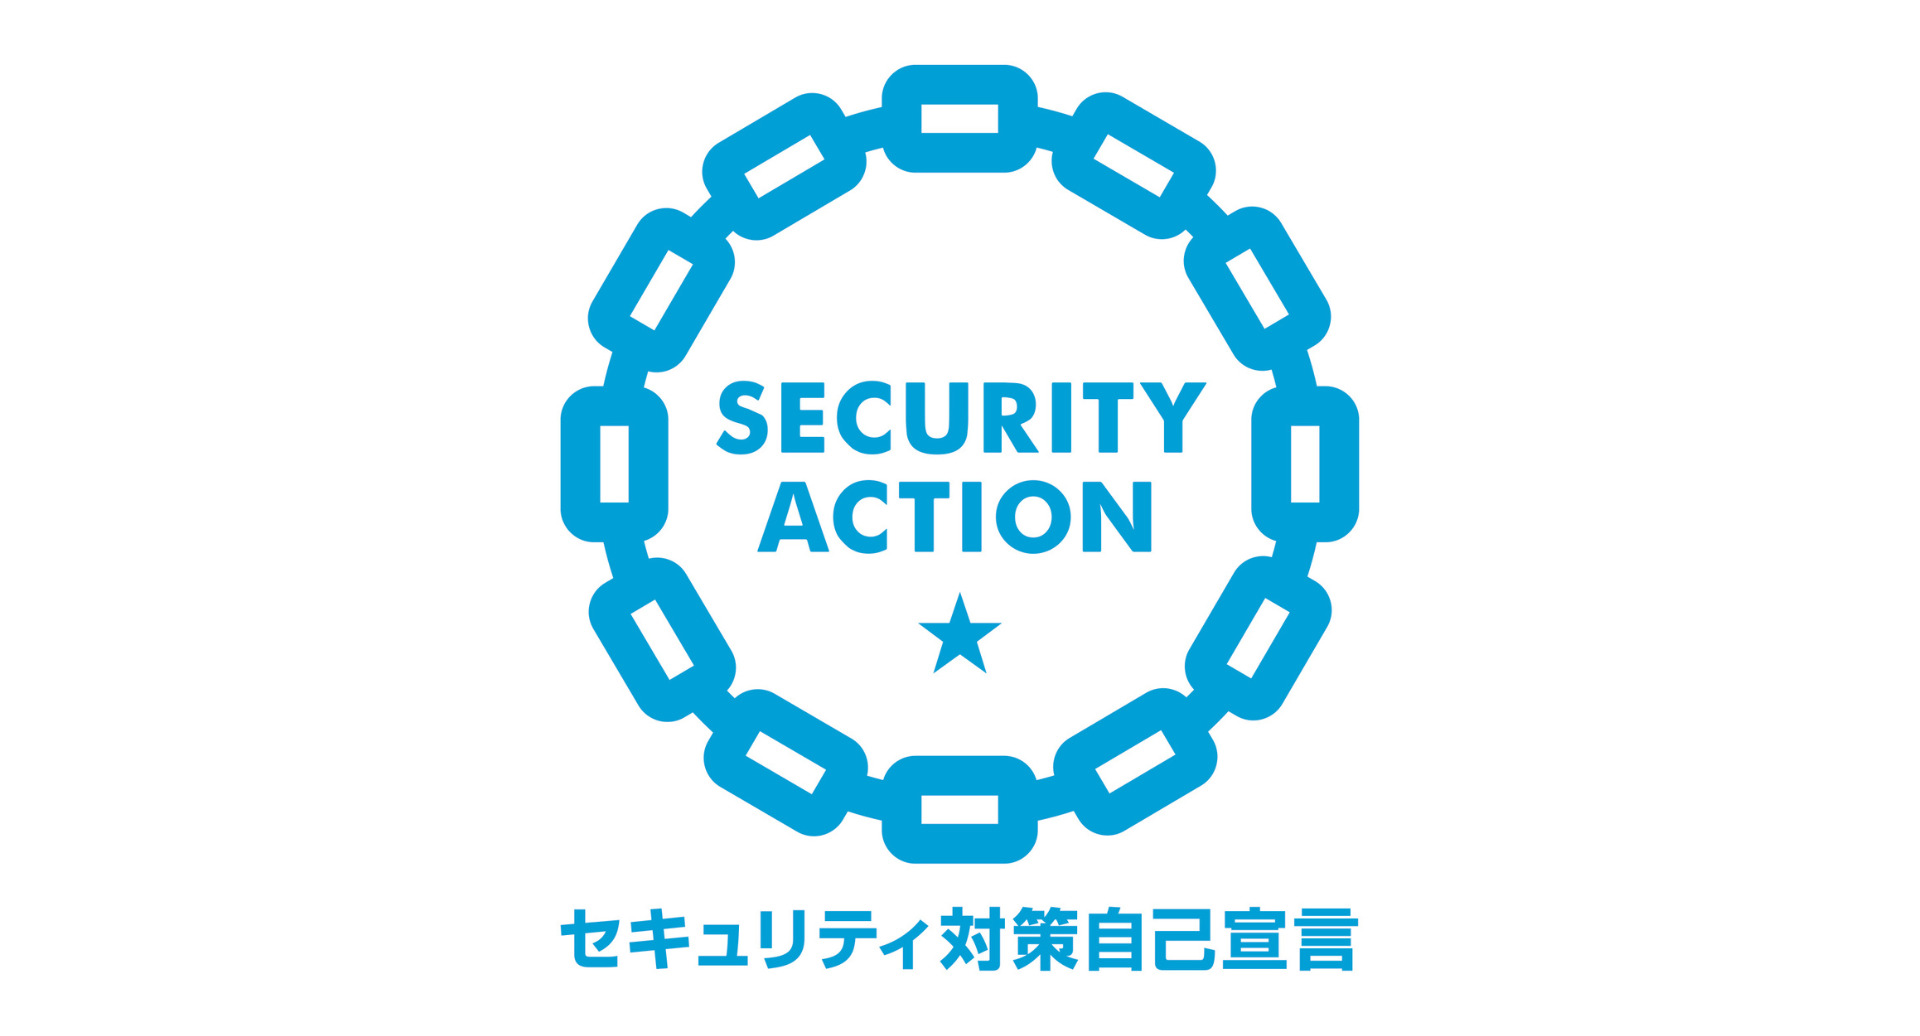 情報セキュリティ対策「SECURITY ACTION」の一つ星を宣言しました